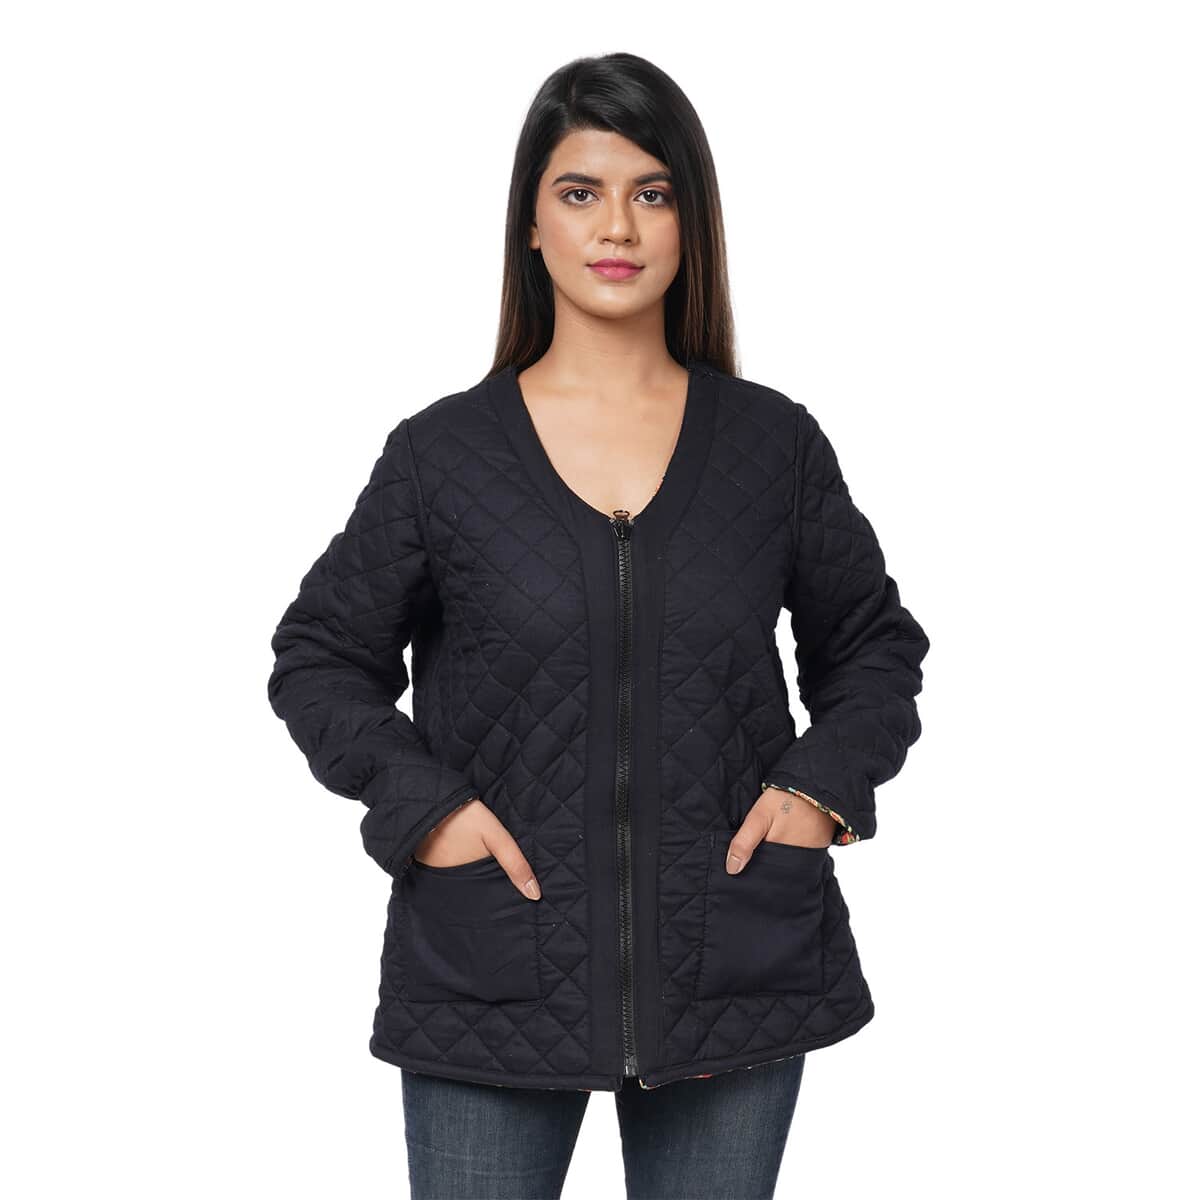 PASSAGE Reversible V-Neck Zippered Quilted Jacket - Floral Print/Reverse Side Black (100% Viscose) - S image number 4